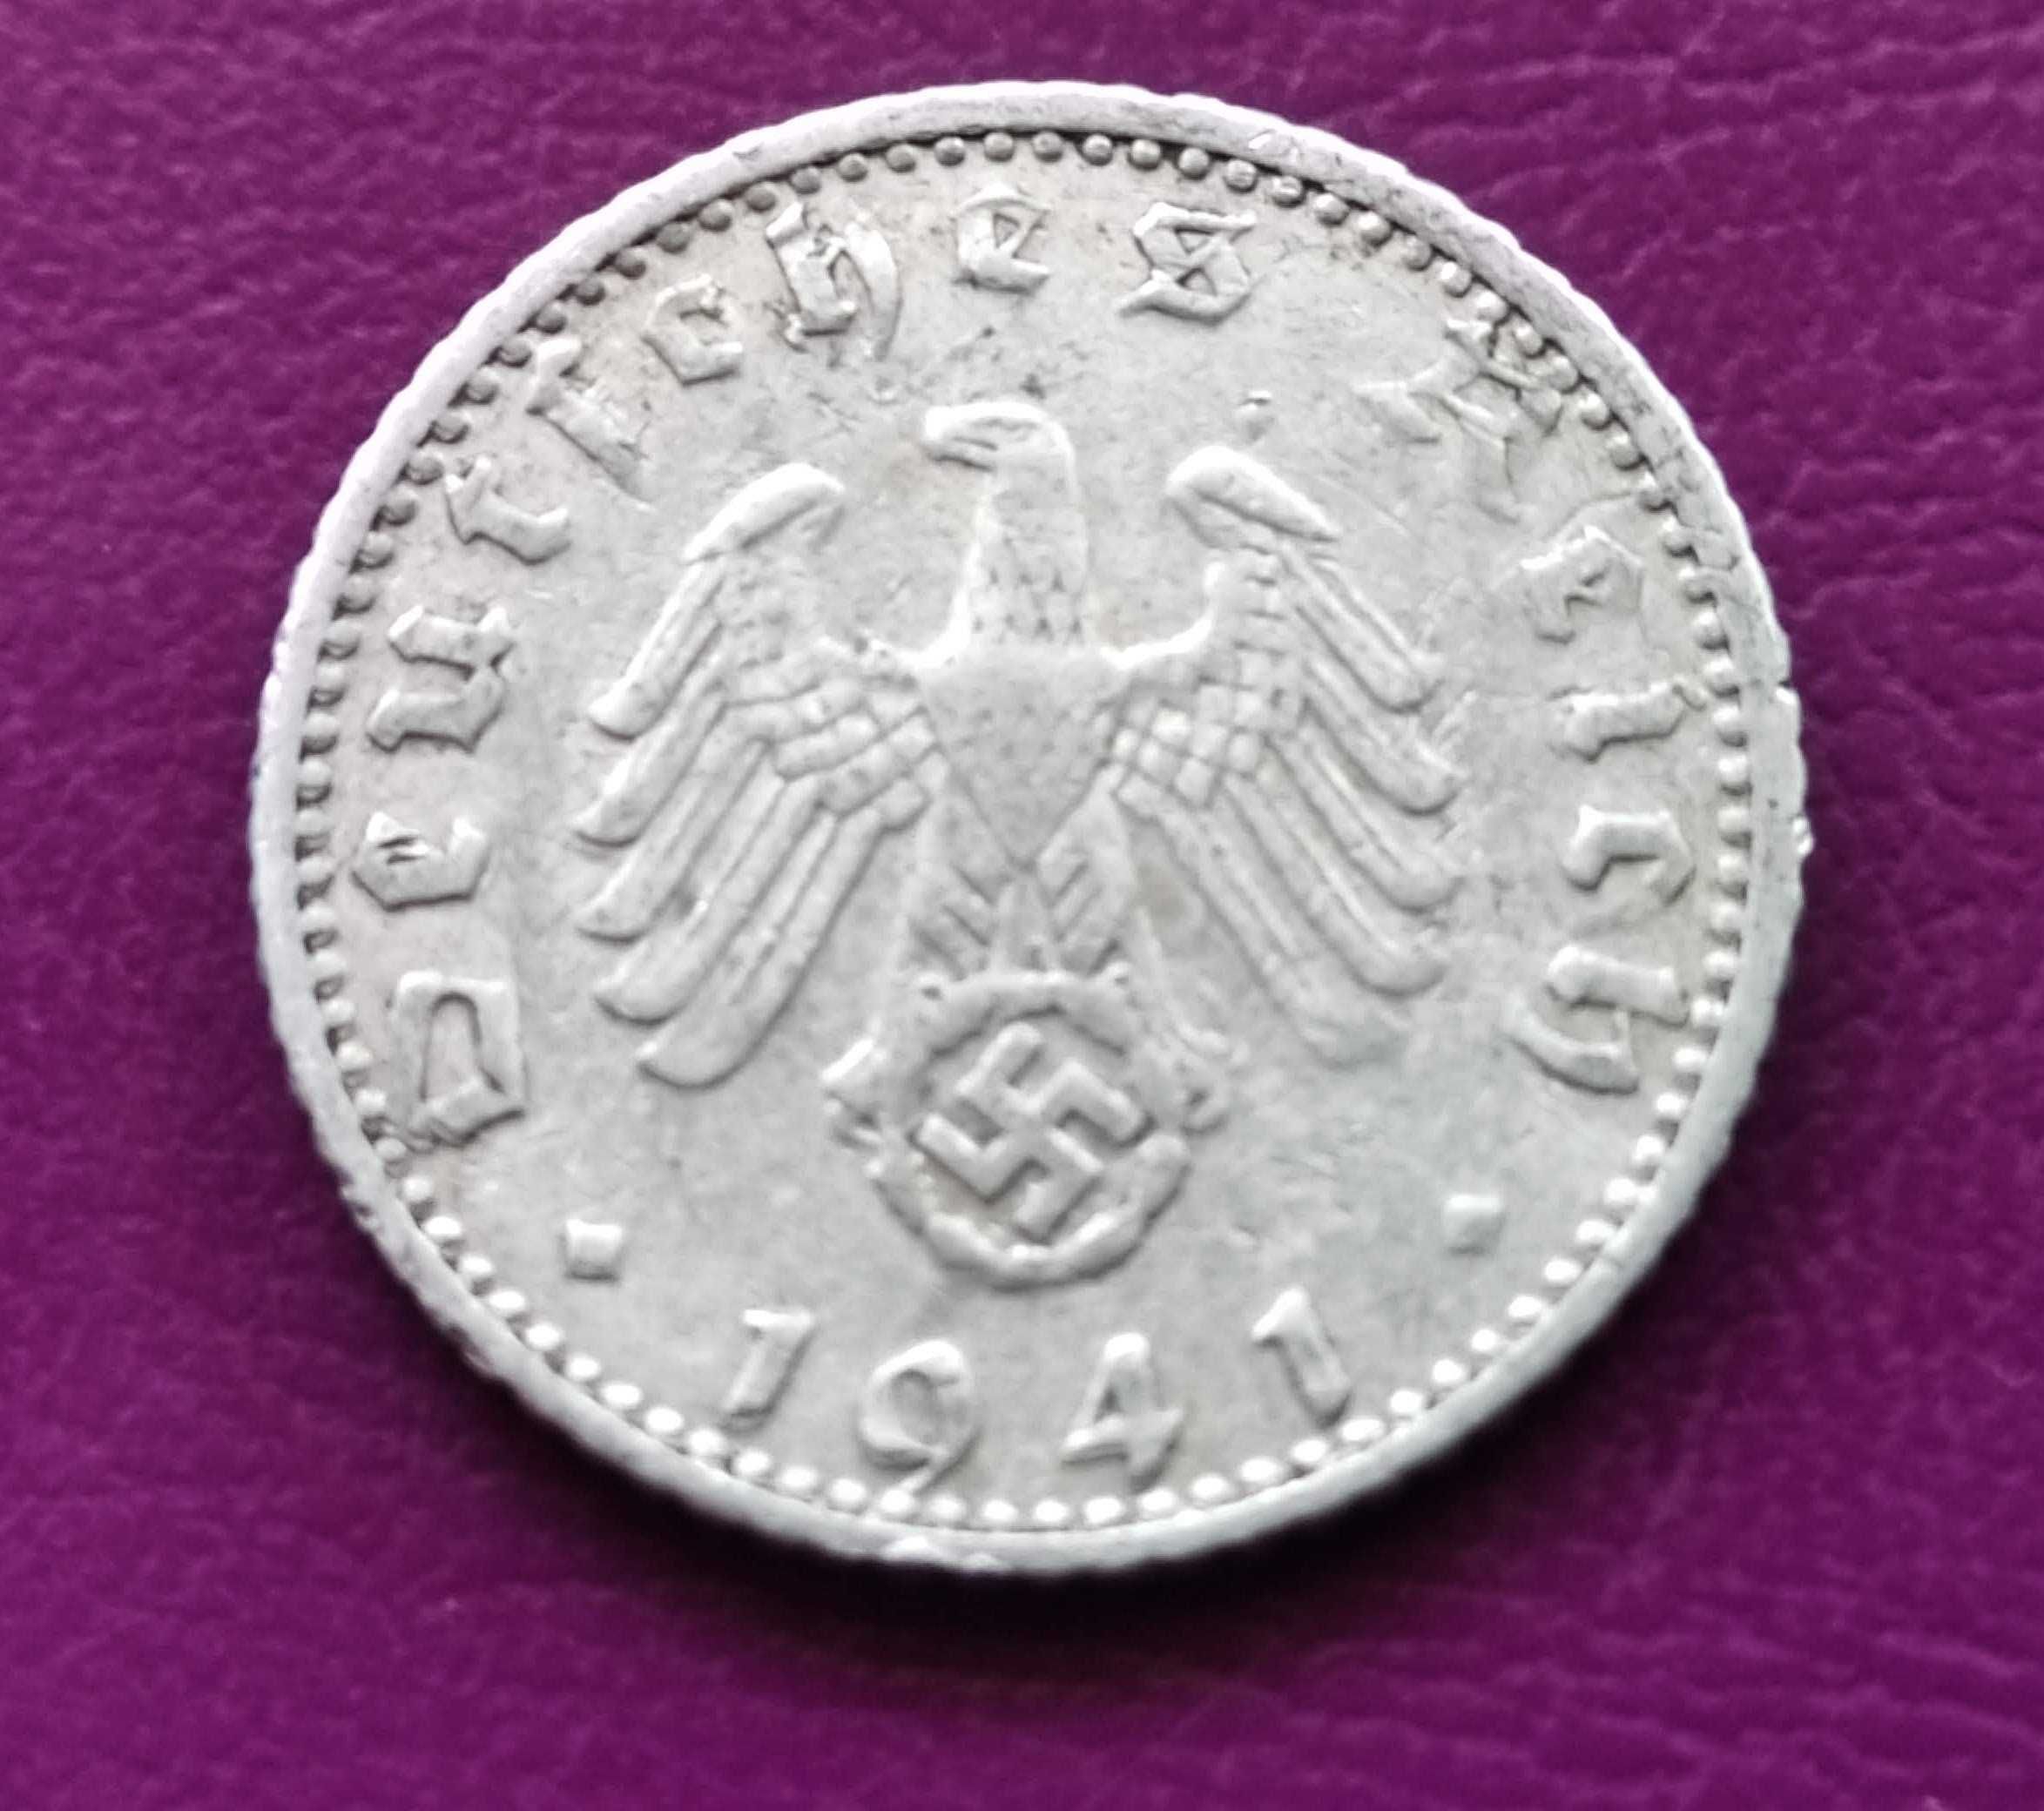 Moneta Niemcy - Trzecia Rzesza 50 reichsfenigów 1941 A - Rzadka